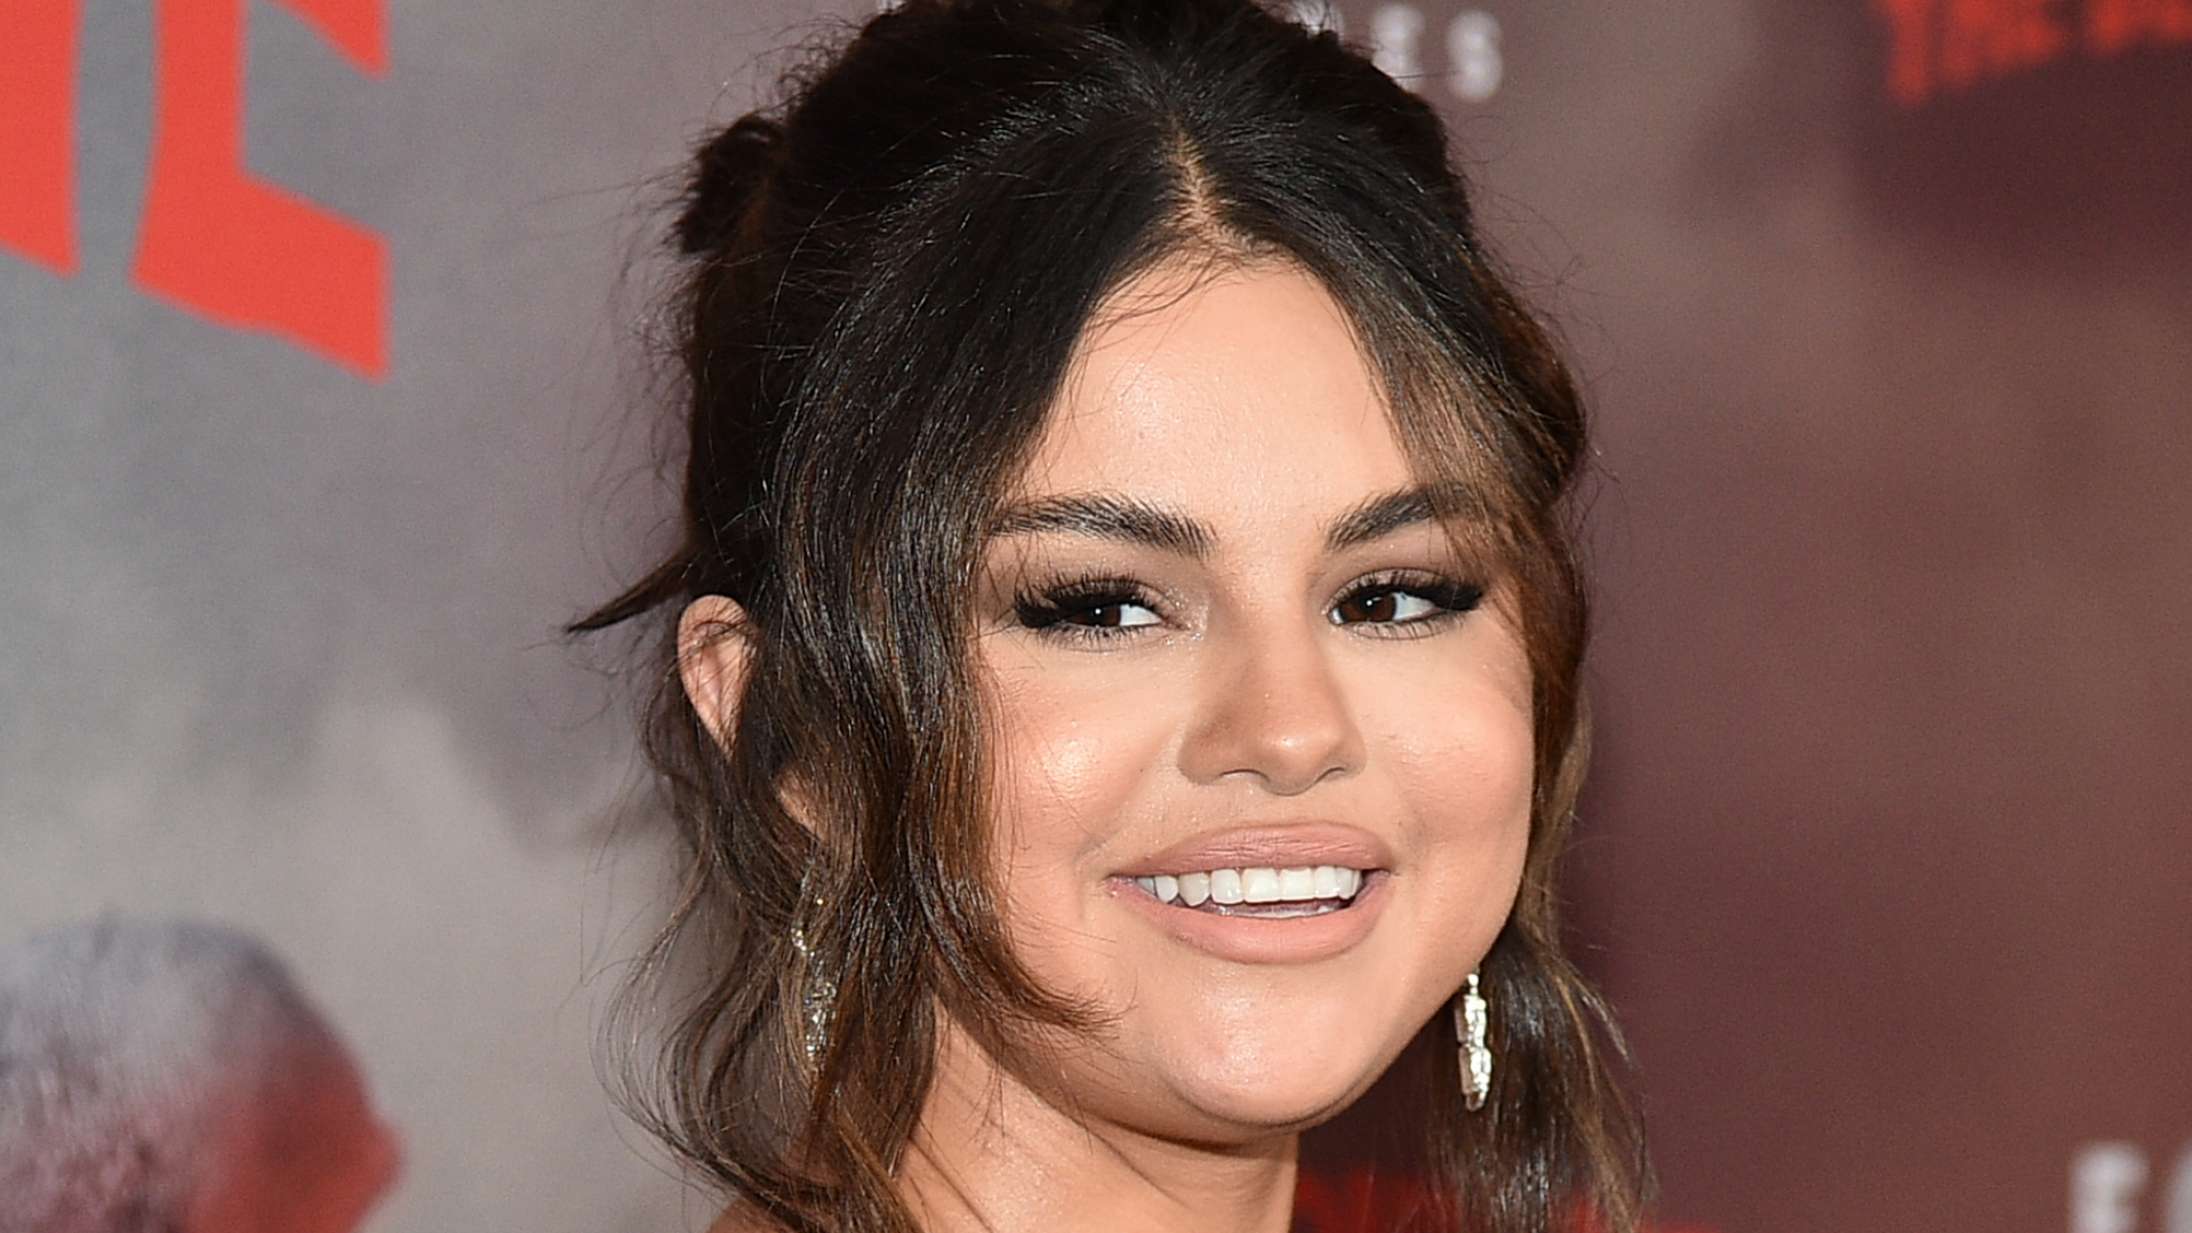 Selena Gomez har ikke brugt sociale medier i fire år: »Det har ændret mit liv fuldstændigt«